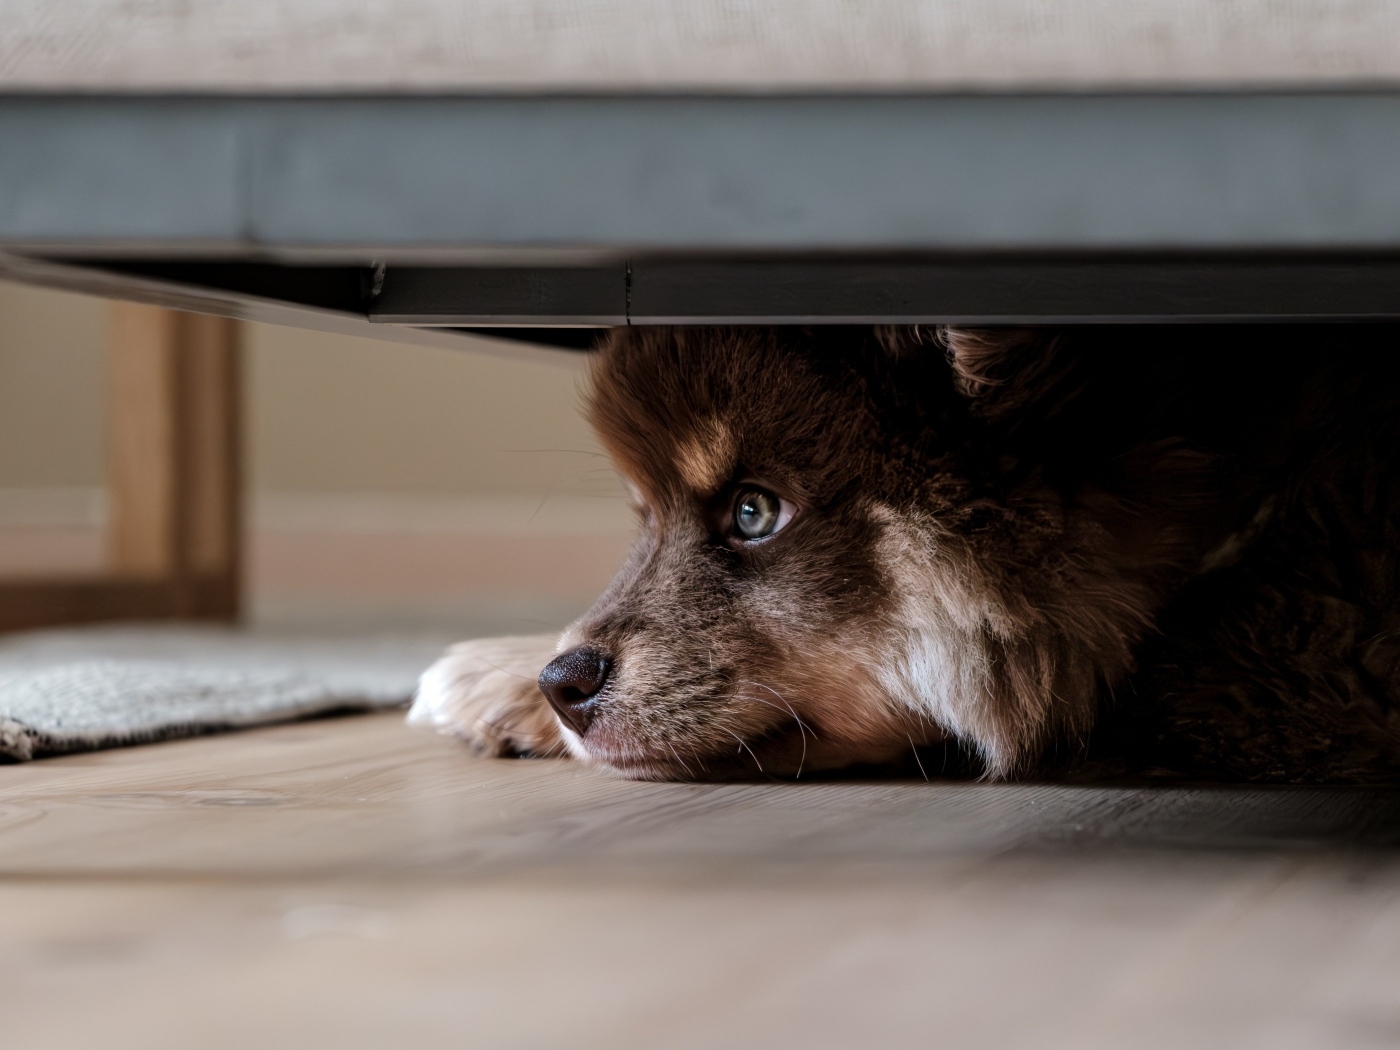 Щенок породы Финский лаппхунд прячется под кроватью